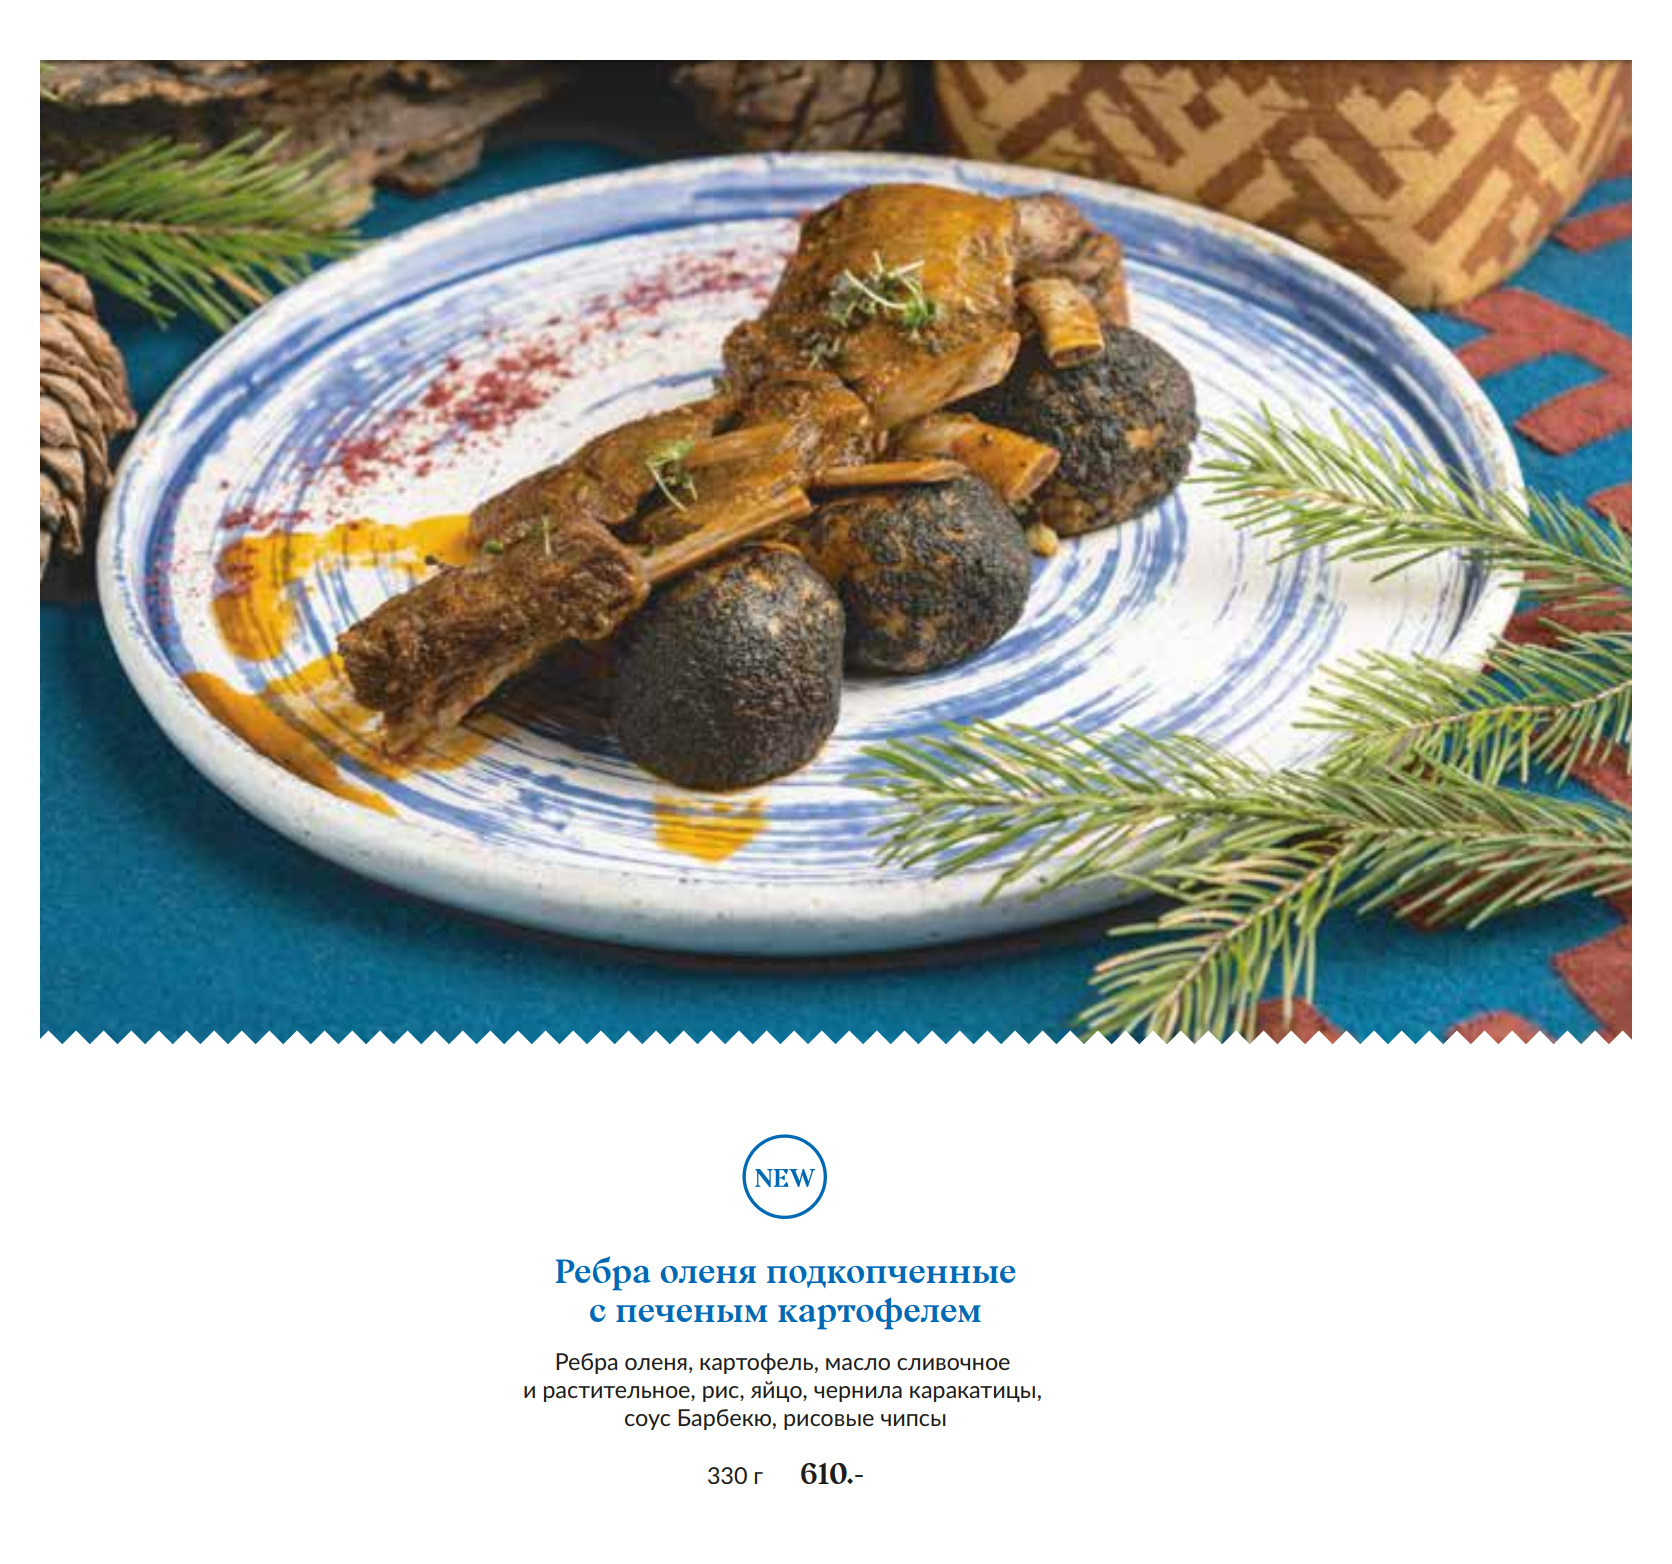 Отдельная страничка в меню «Чума» посвящена блюдам из оленины. Если вы не плакали из⁠-⁠за Бемби, то рекомендую попробовать. Источник: maxim⁠-⁠rest.ru